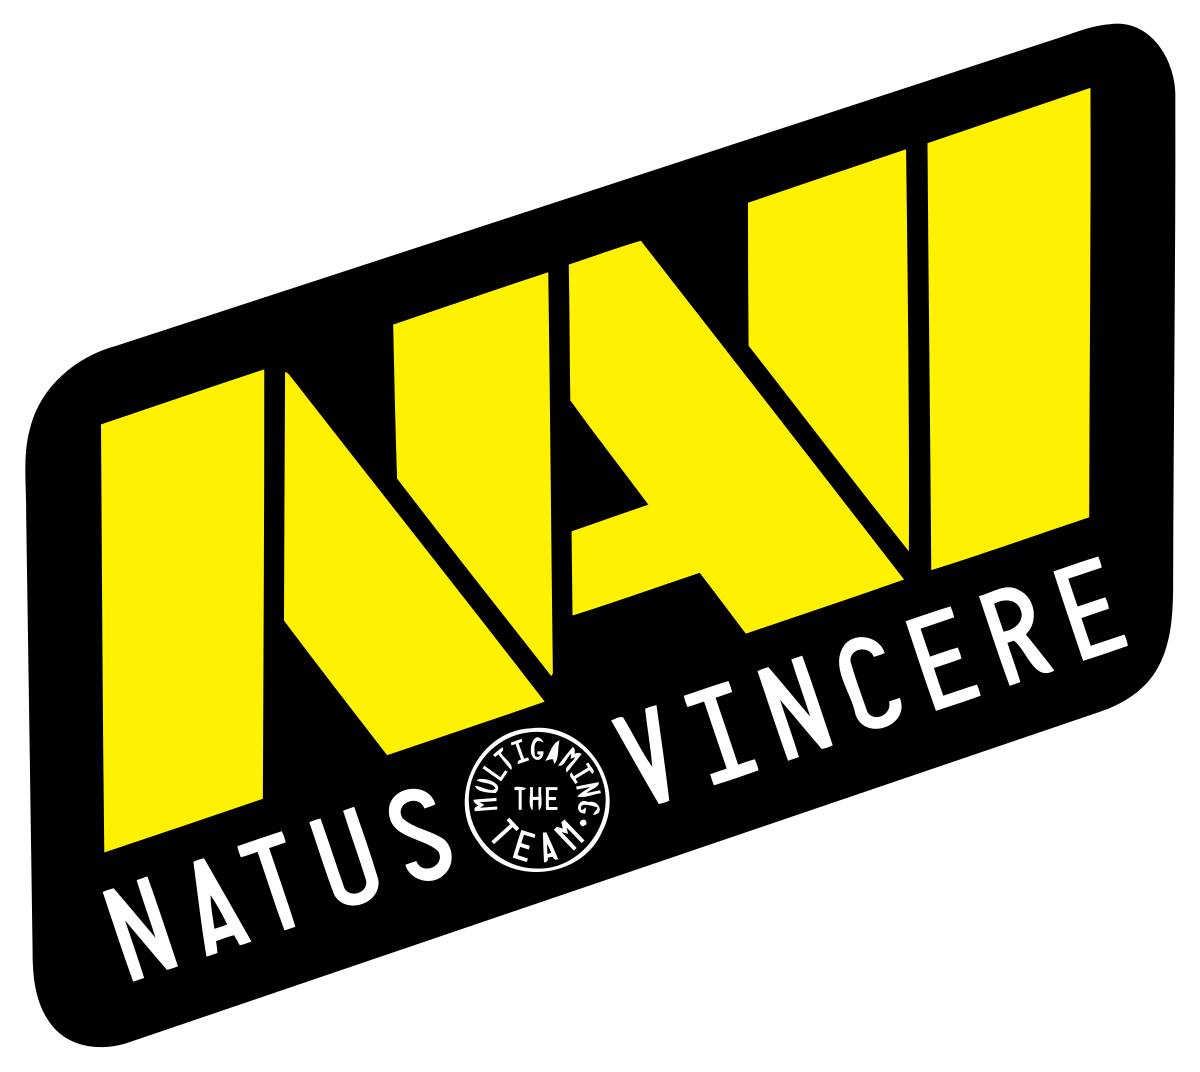 Natus Vincere представит нового игрока в течение двух дней